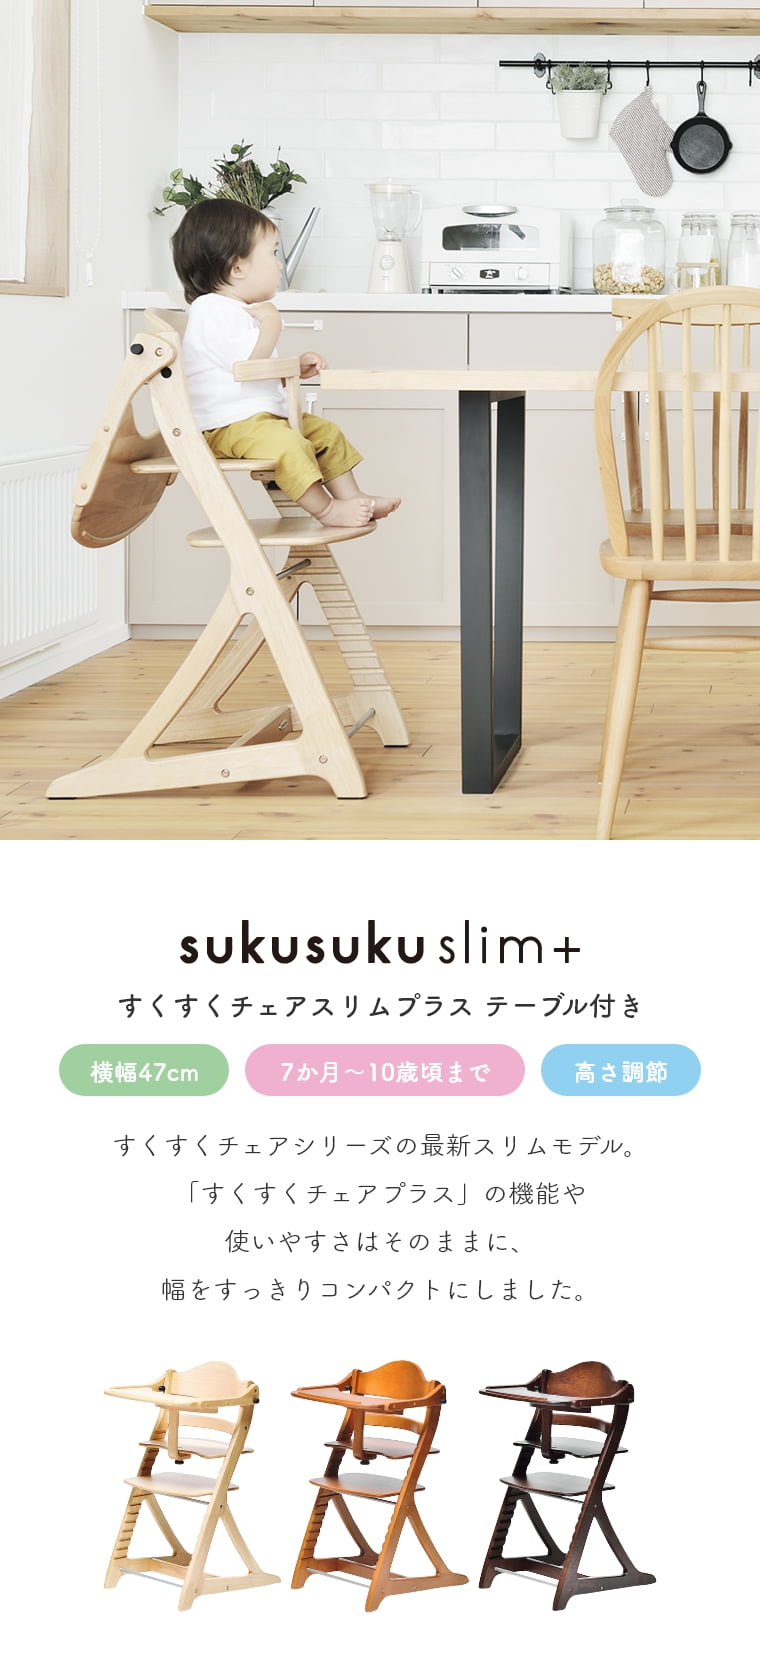 即日出荷】 すくすくチェアスリムプラス テーブル・ガード付 sukusuku+